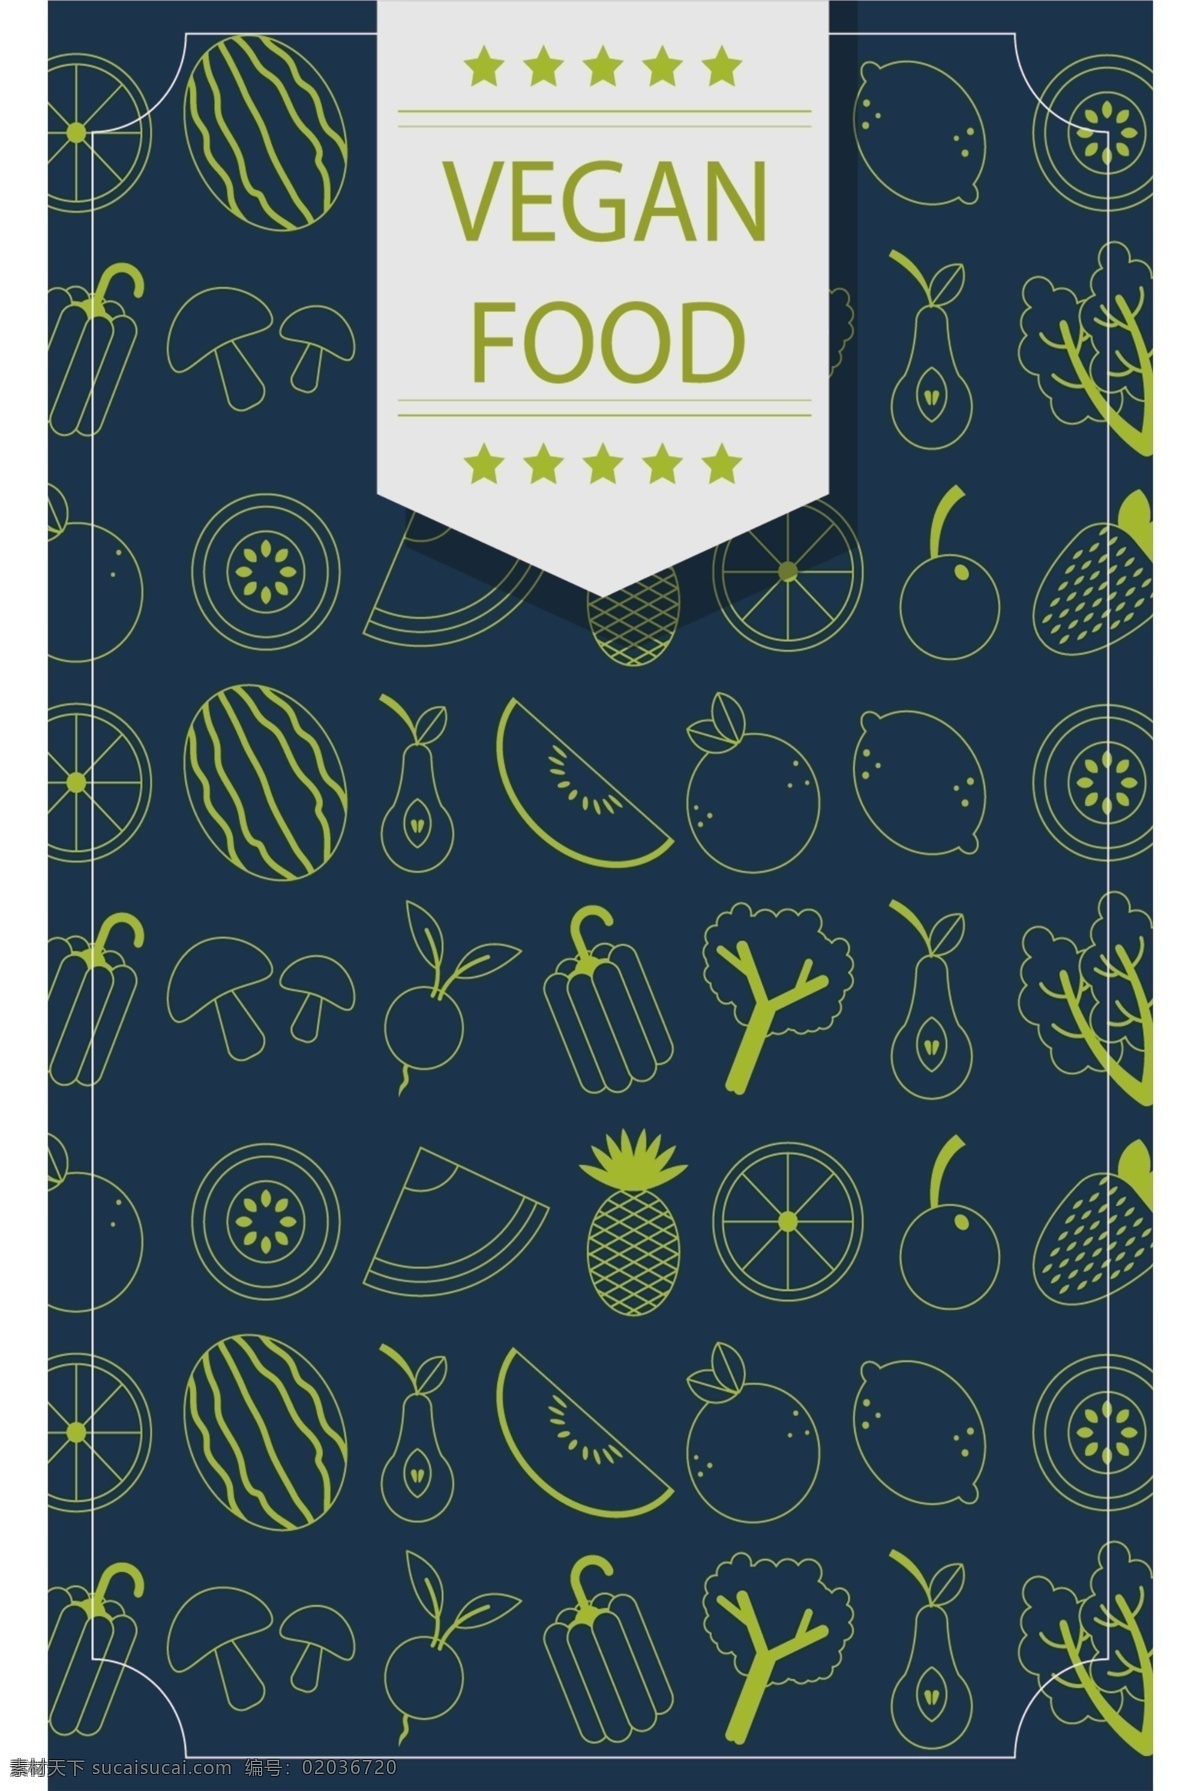 创意 水果 茶 菜单 模板 美食 创意设计 餐饮 小吃 菜单模板 菜单设计 模板设计 水果创意 水果模板 水果菜单